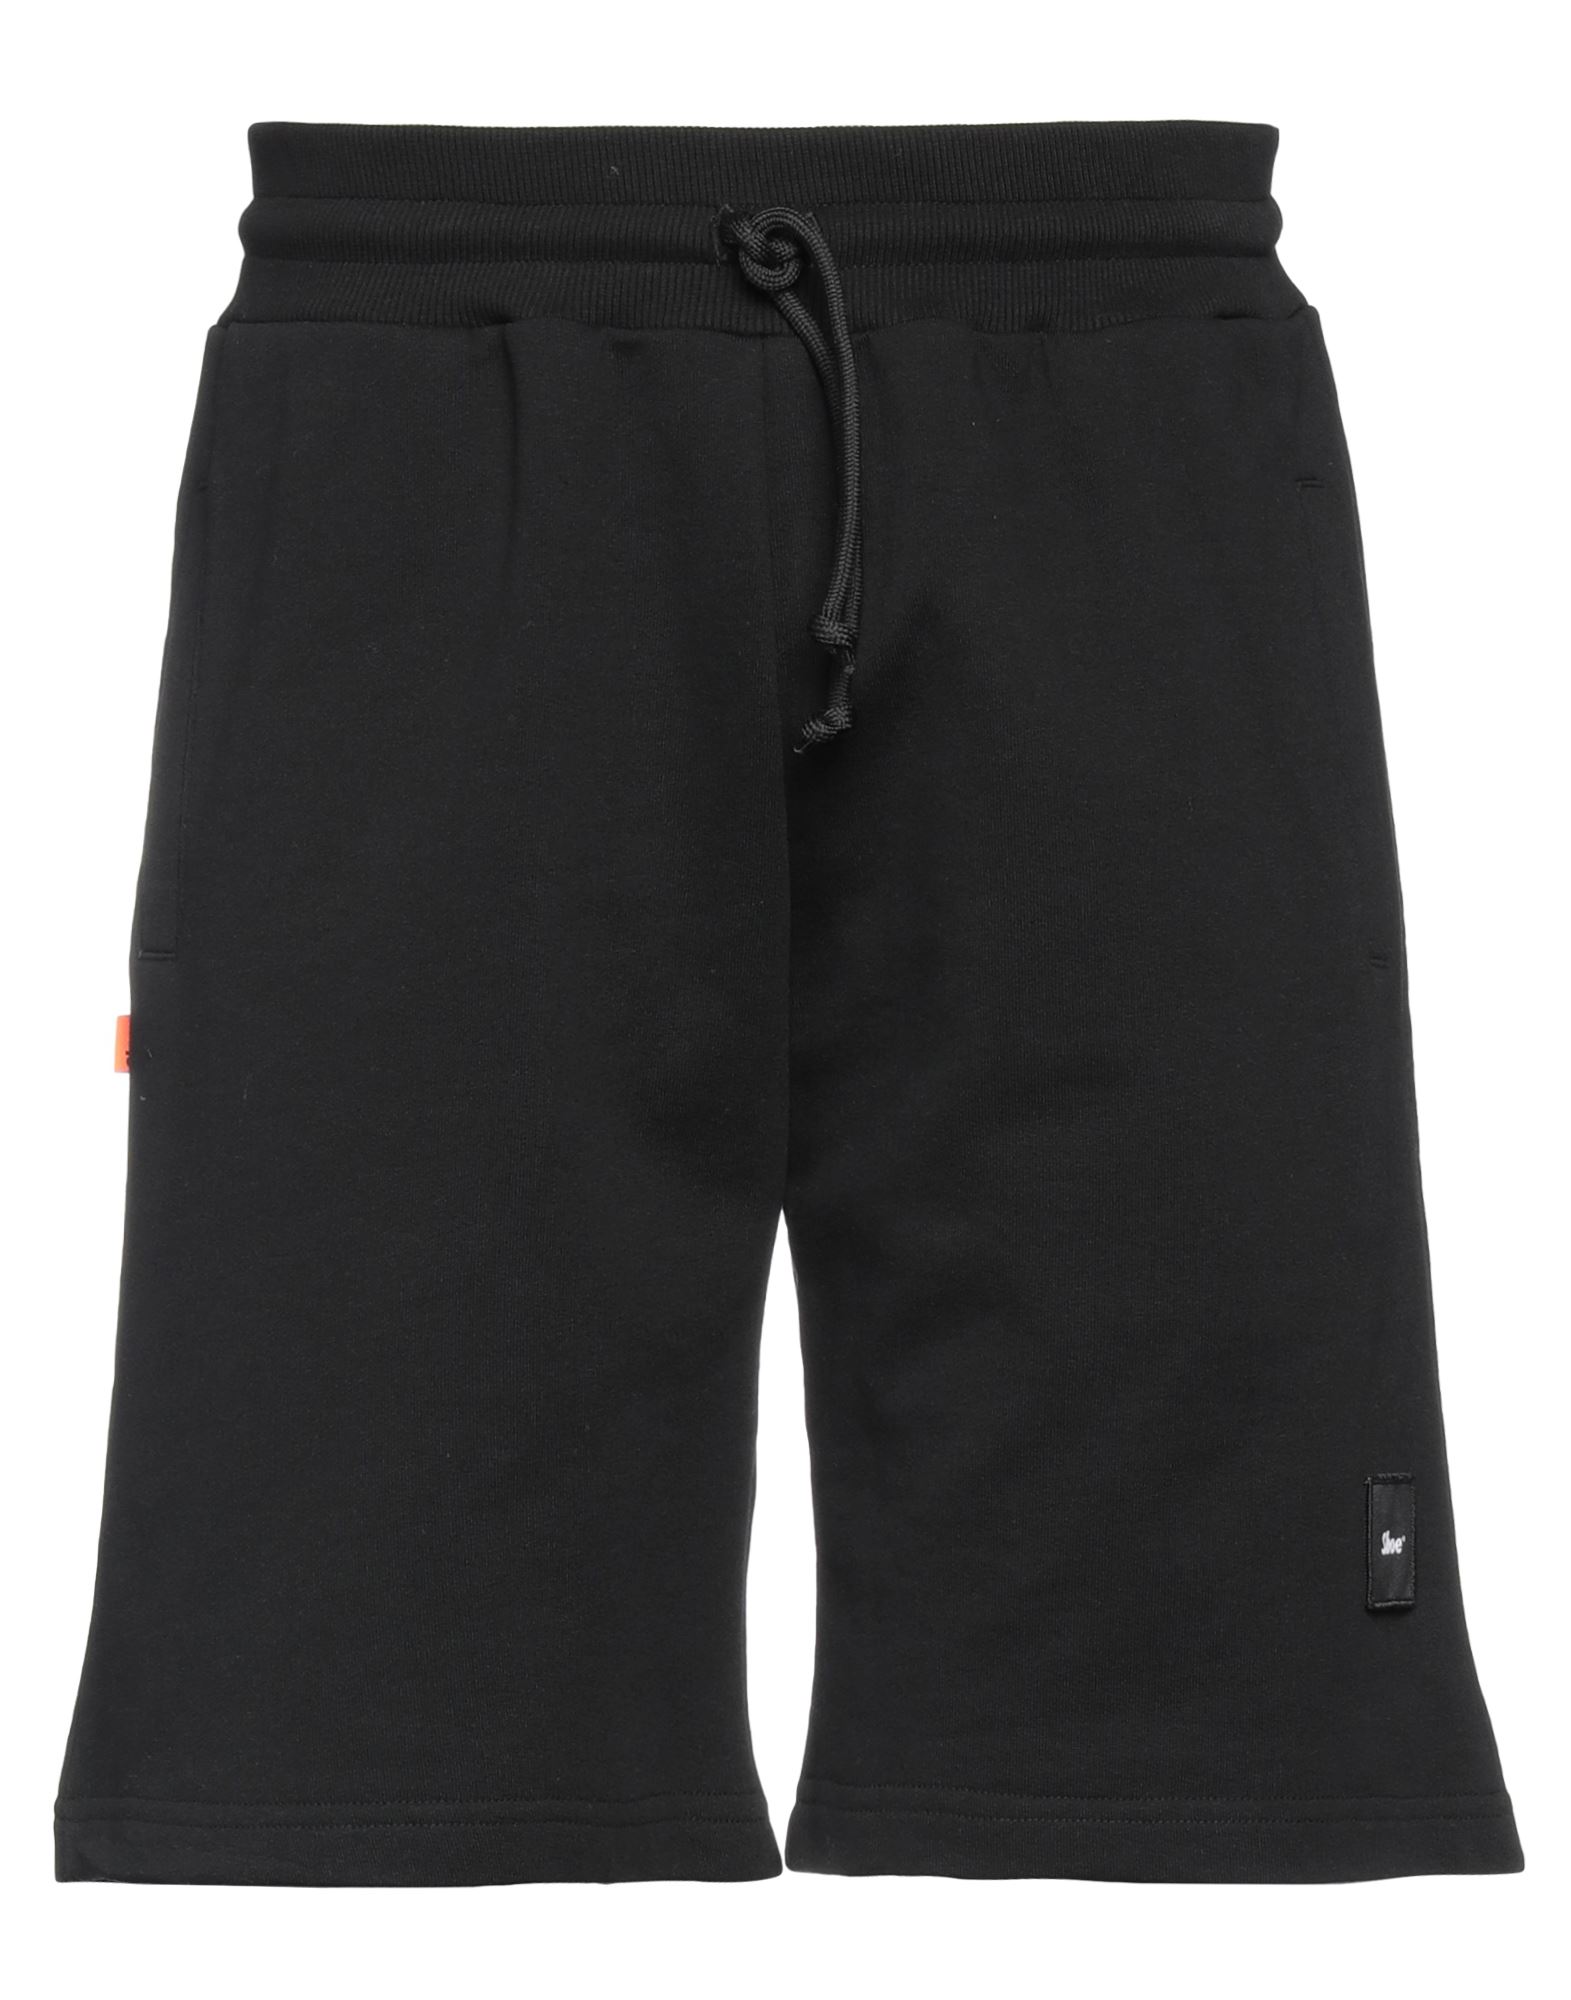 Shoe® Shoe Man Shorts & Bermuda Shorts Black Size Xl Cotton, Polyester